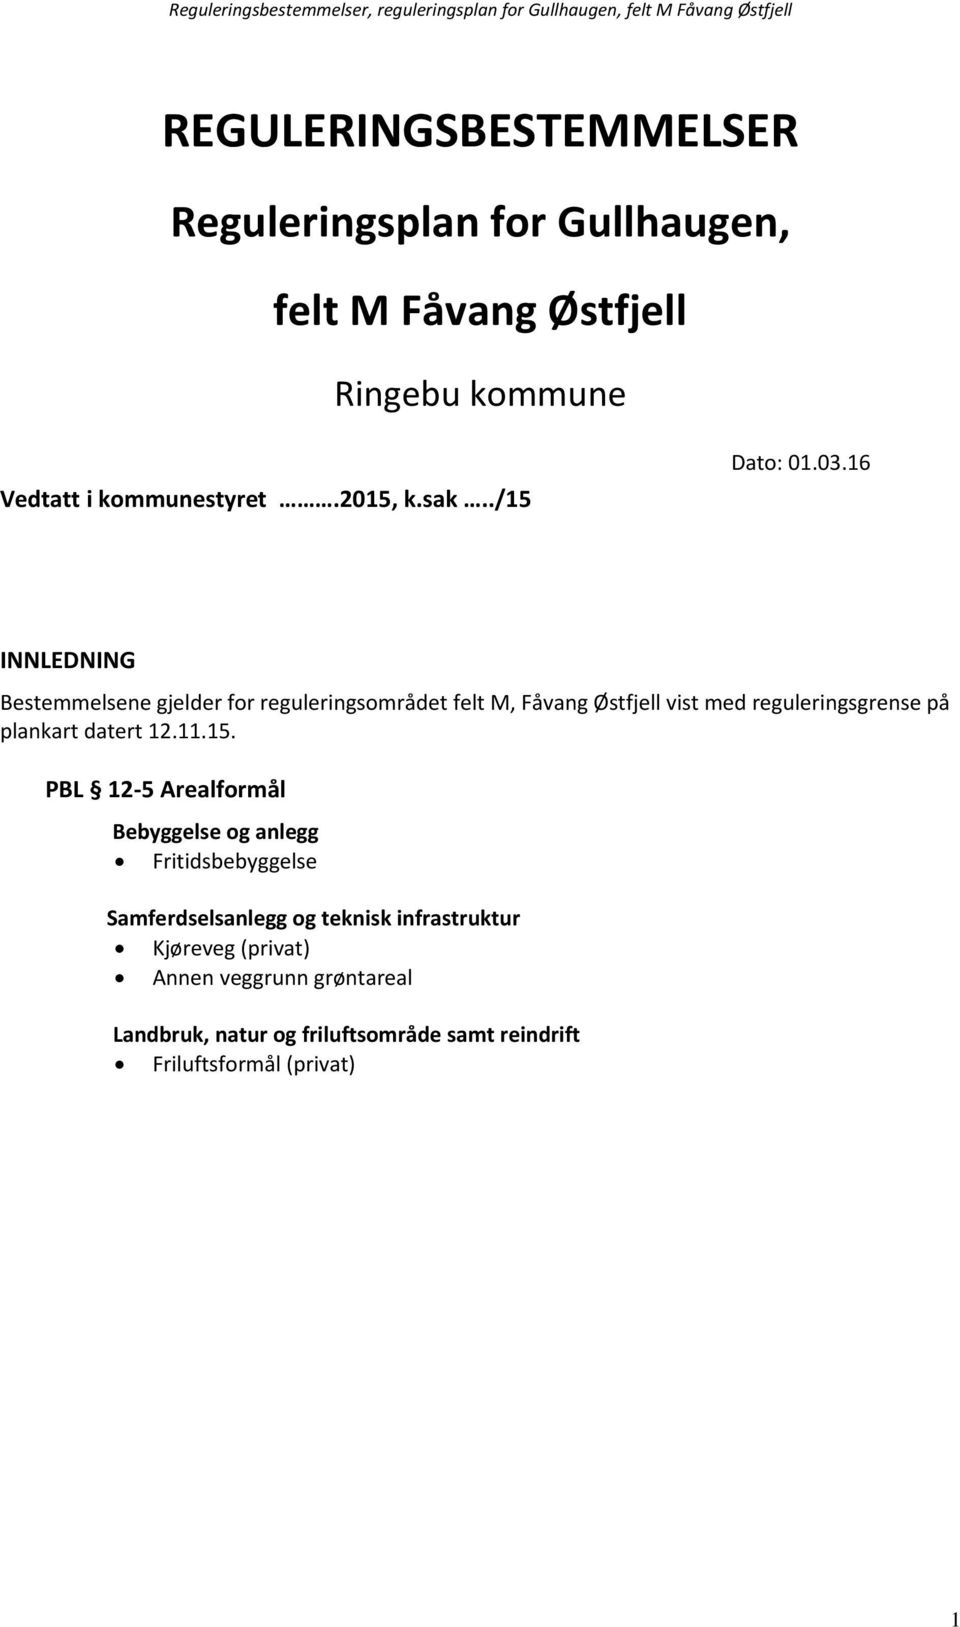 16 INNLEDNING Bestemmelsene gjelder for reguleringsområdet felt M, Fåvang Østfjell vist med reguleringsgrense på plankart